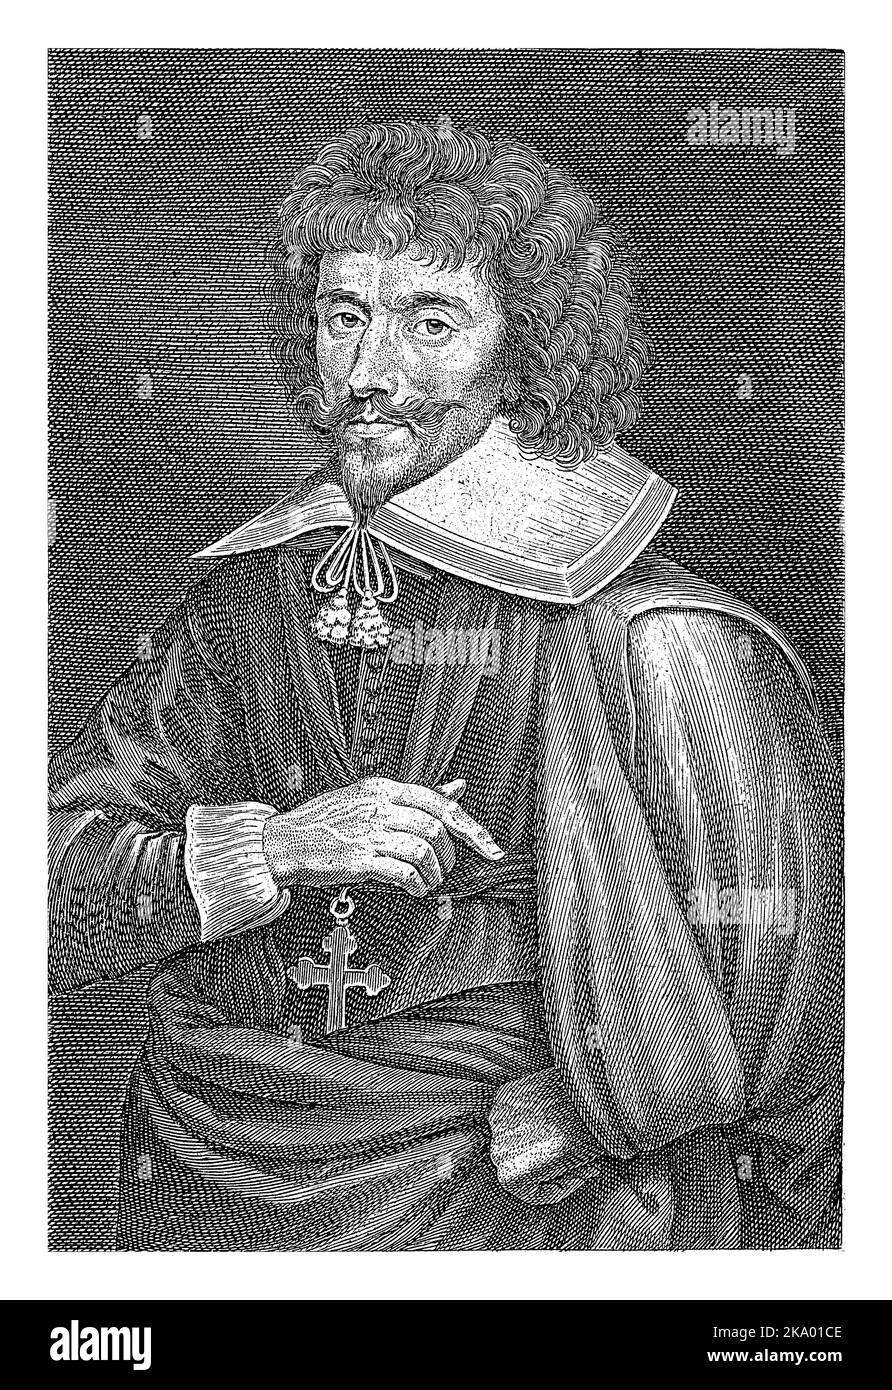 Portrait de Jean Puget de la serre, Lucas Vorsterman (I), d'après Nicolaas van der Horst, 1628 - 1675 Portrait du dramaturge français Jean Puget de la Banque D'Images